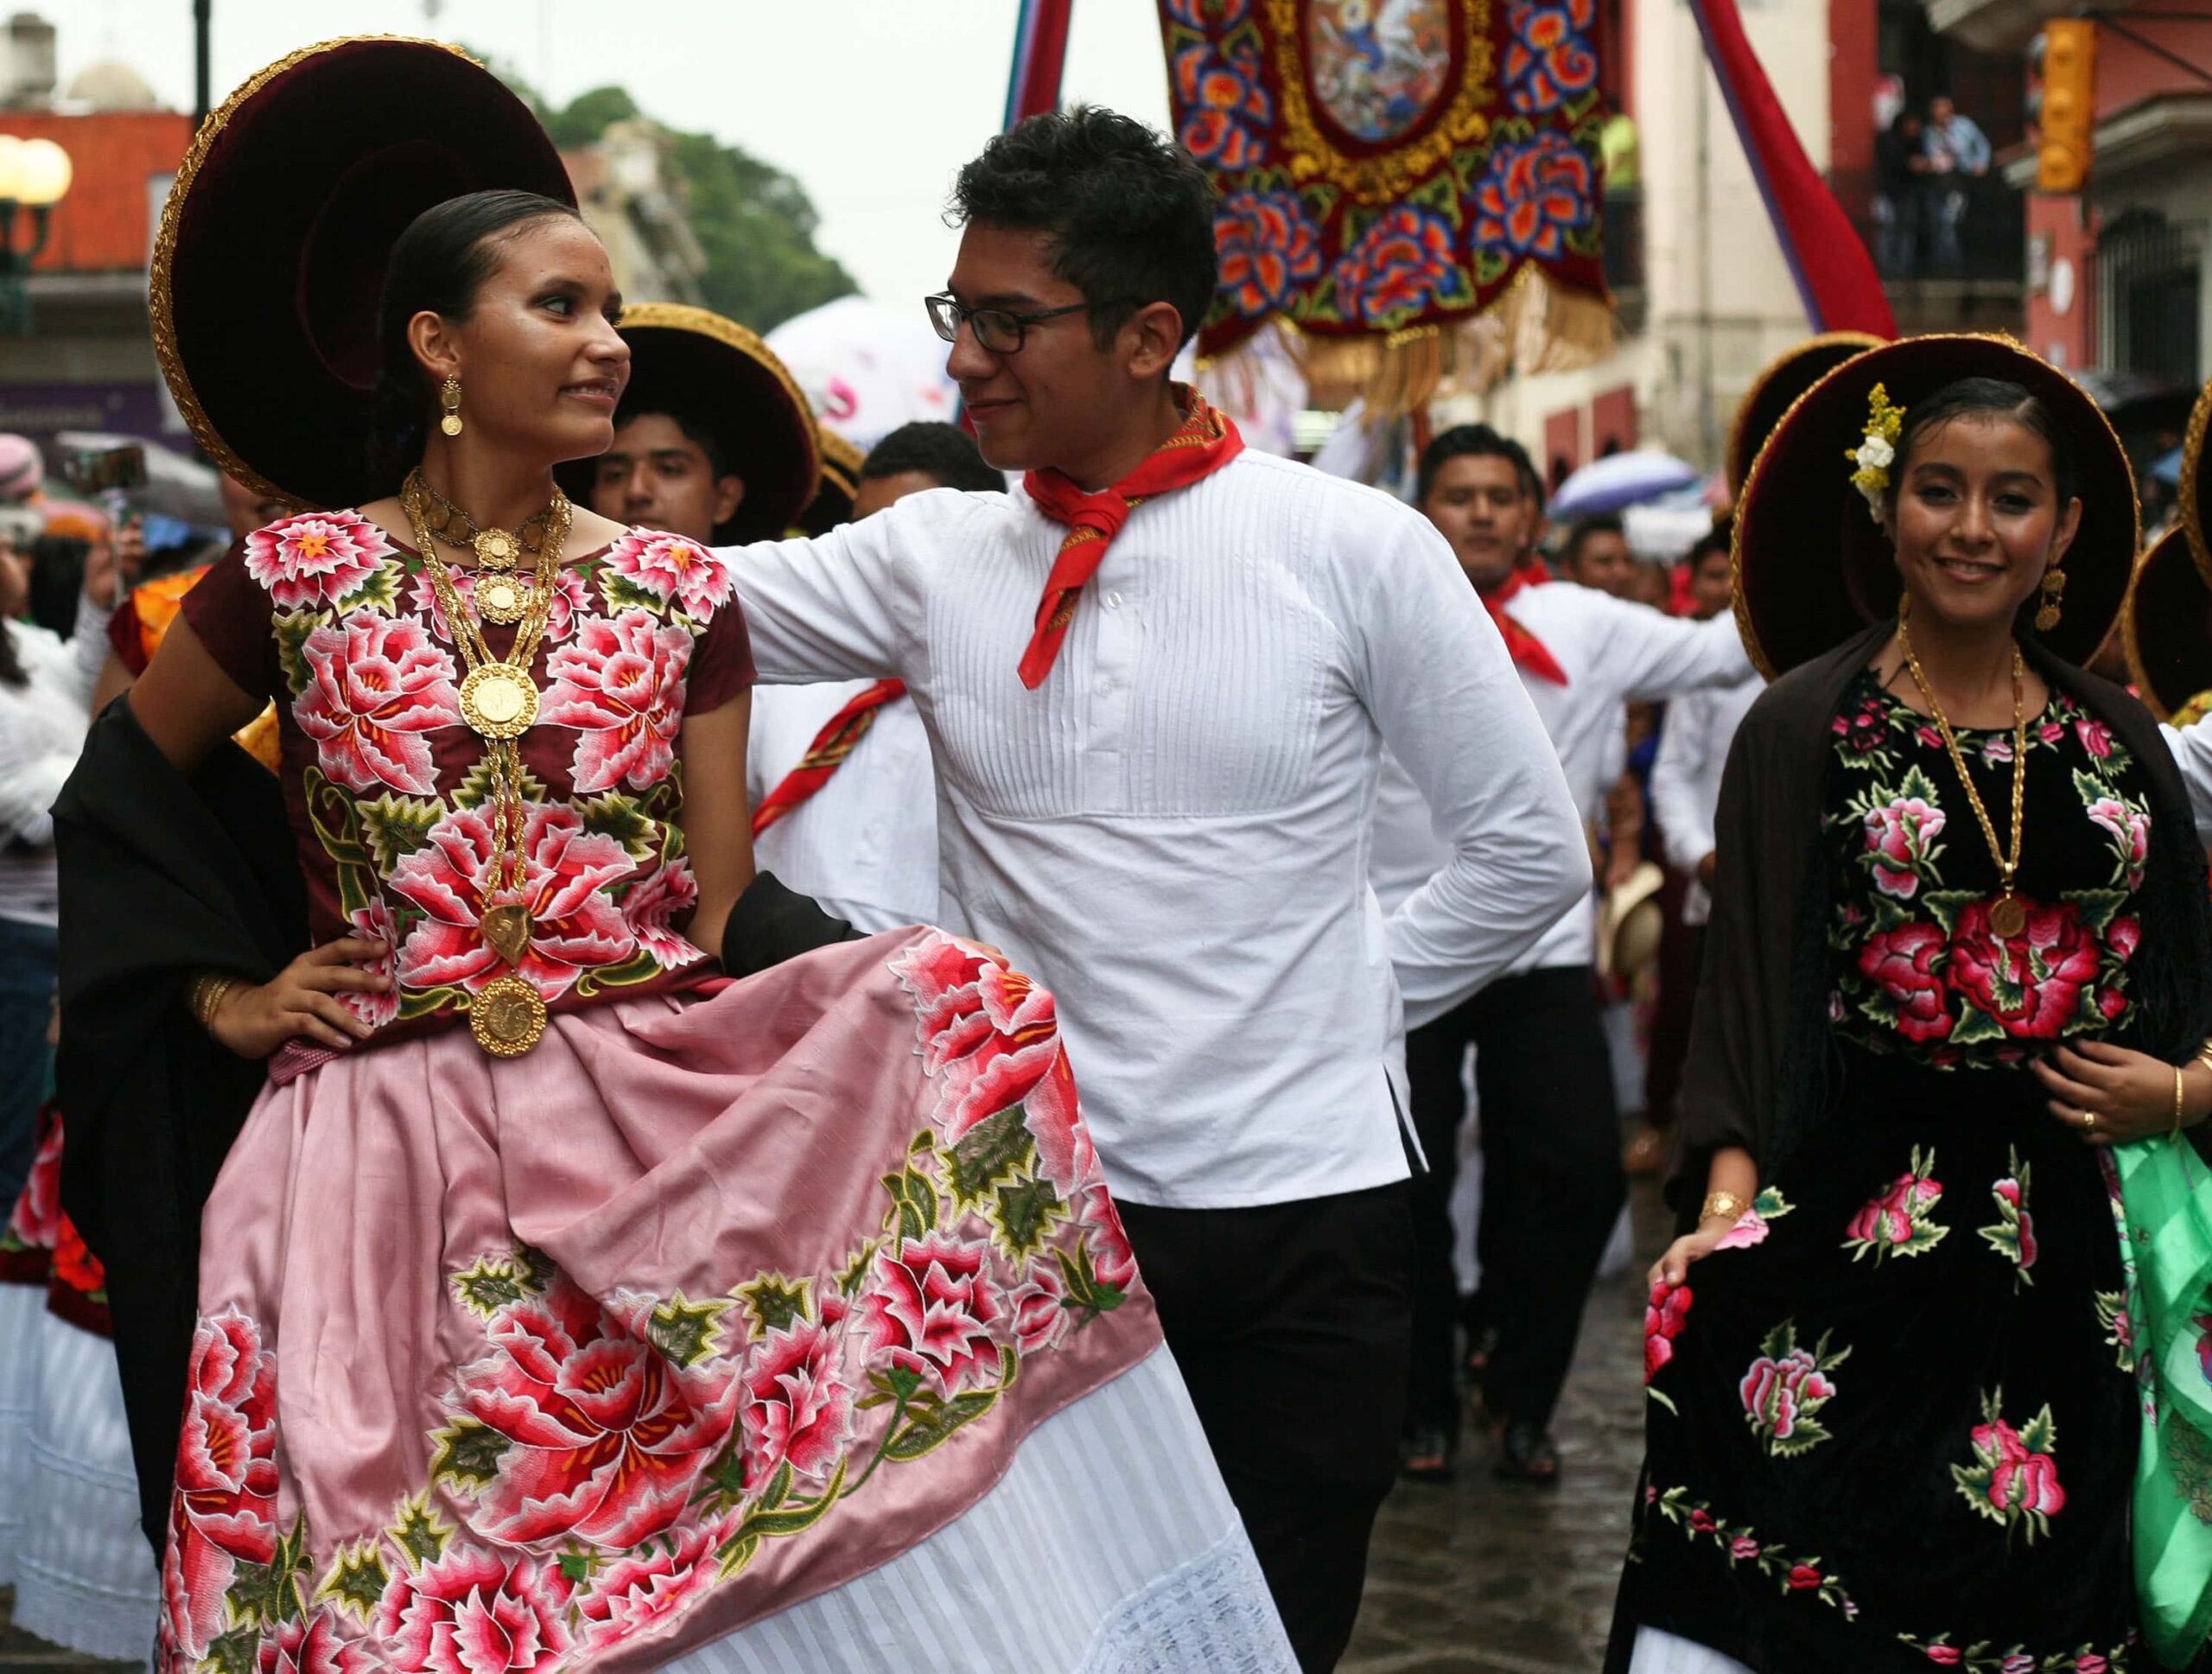 Las fiestas de las "Velas" del Istmo de Tehuantepec, Oaxaca